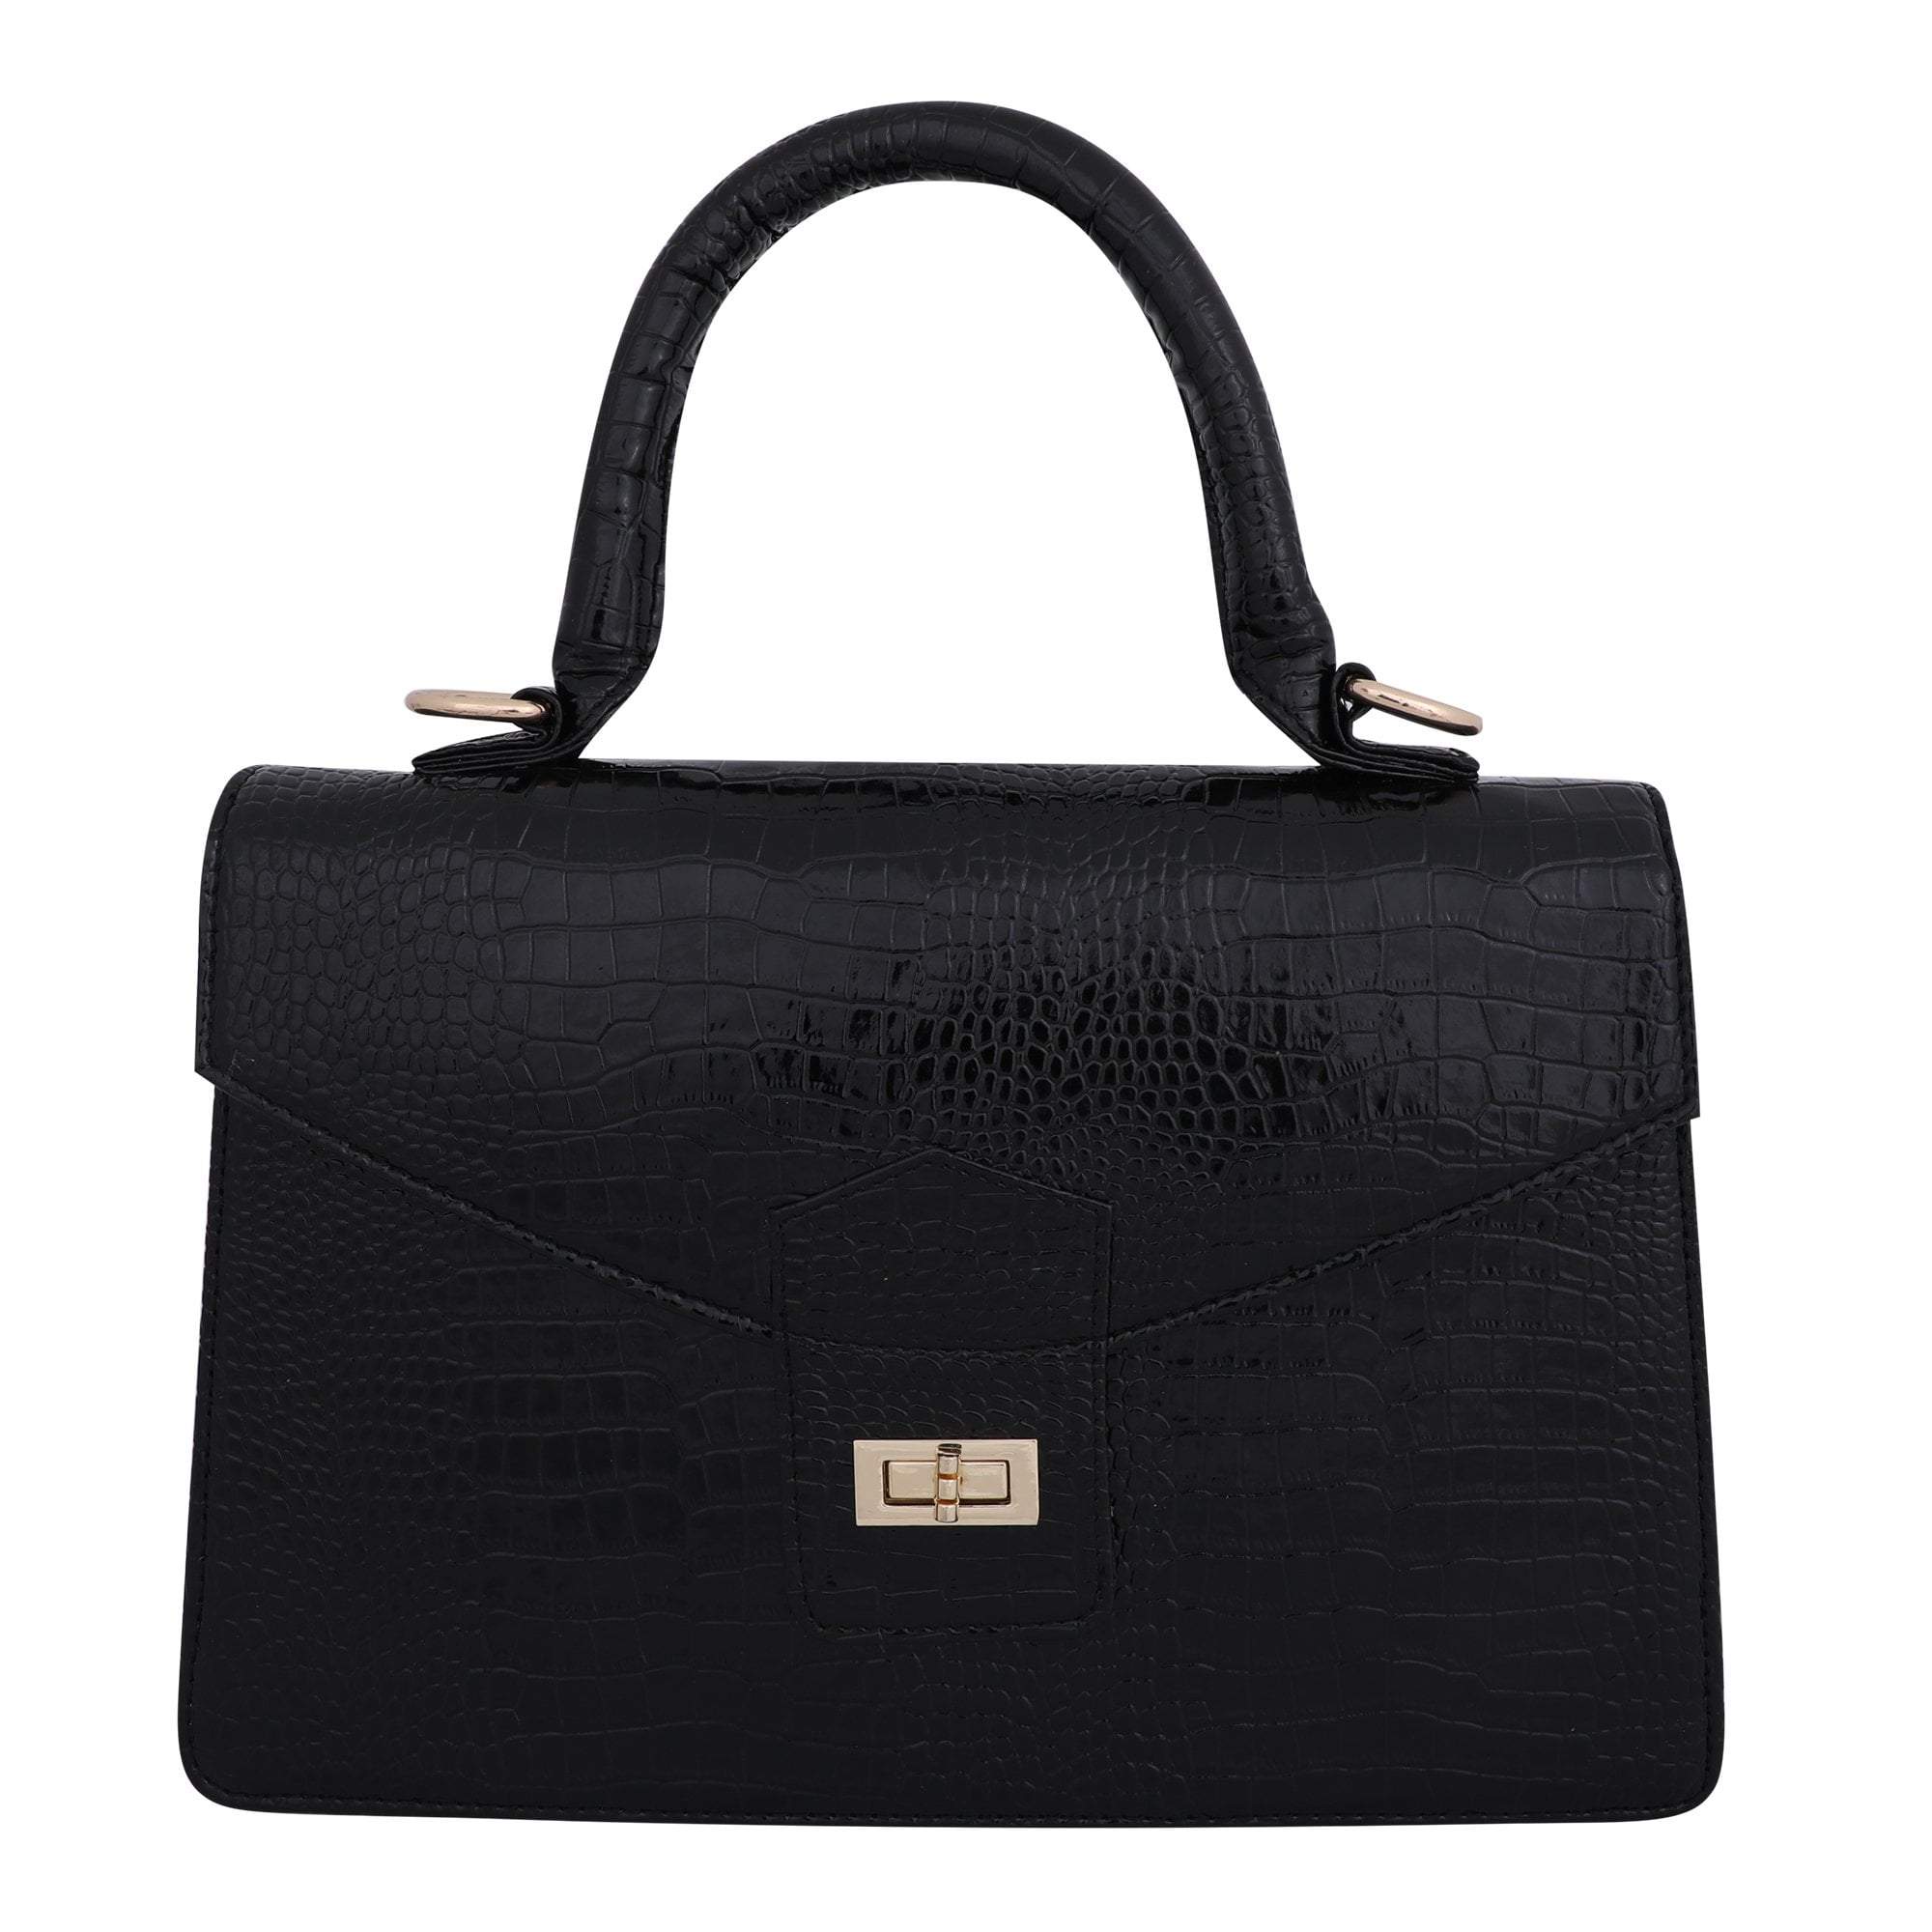 kinnoti Handbags Black Vegan Croco Leather Satchel Handbag